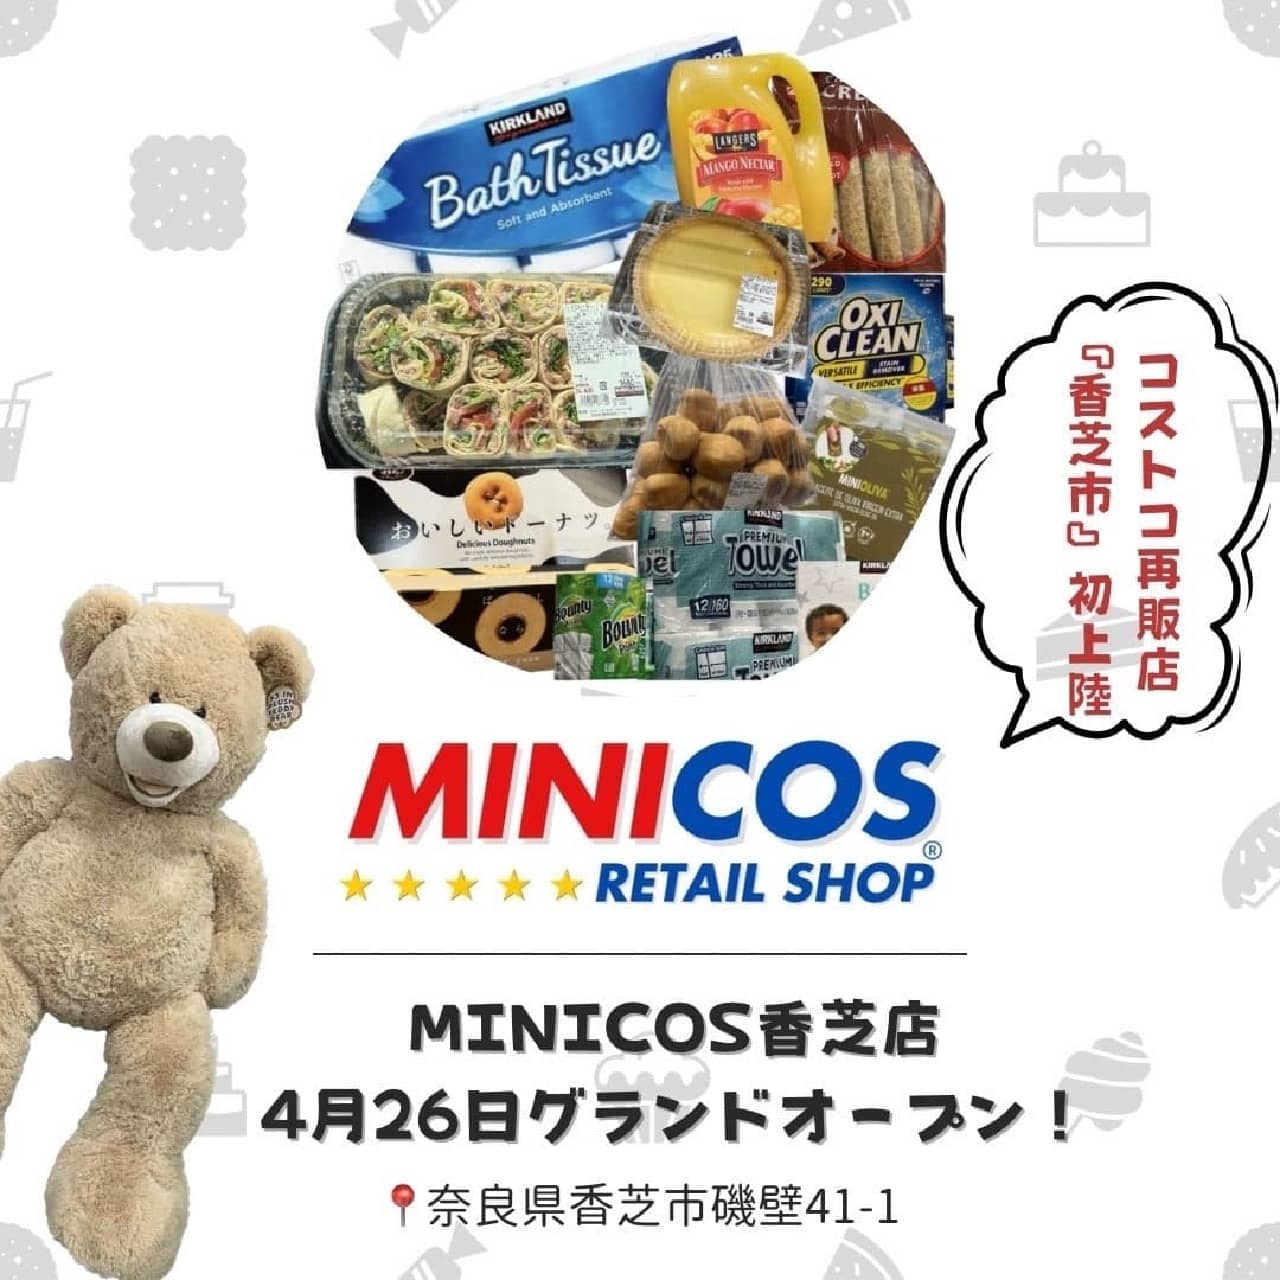 奈良県香芝市に新たなショッピングスポットが誕生！「MINICOS」が地域初のコストコ再販店として、多くの人気商品を小分け販売で提供開始 画像1